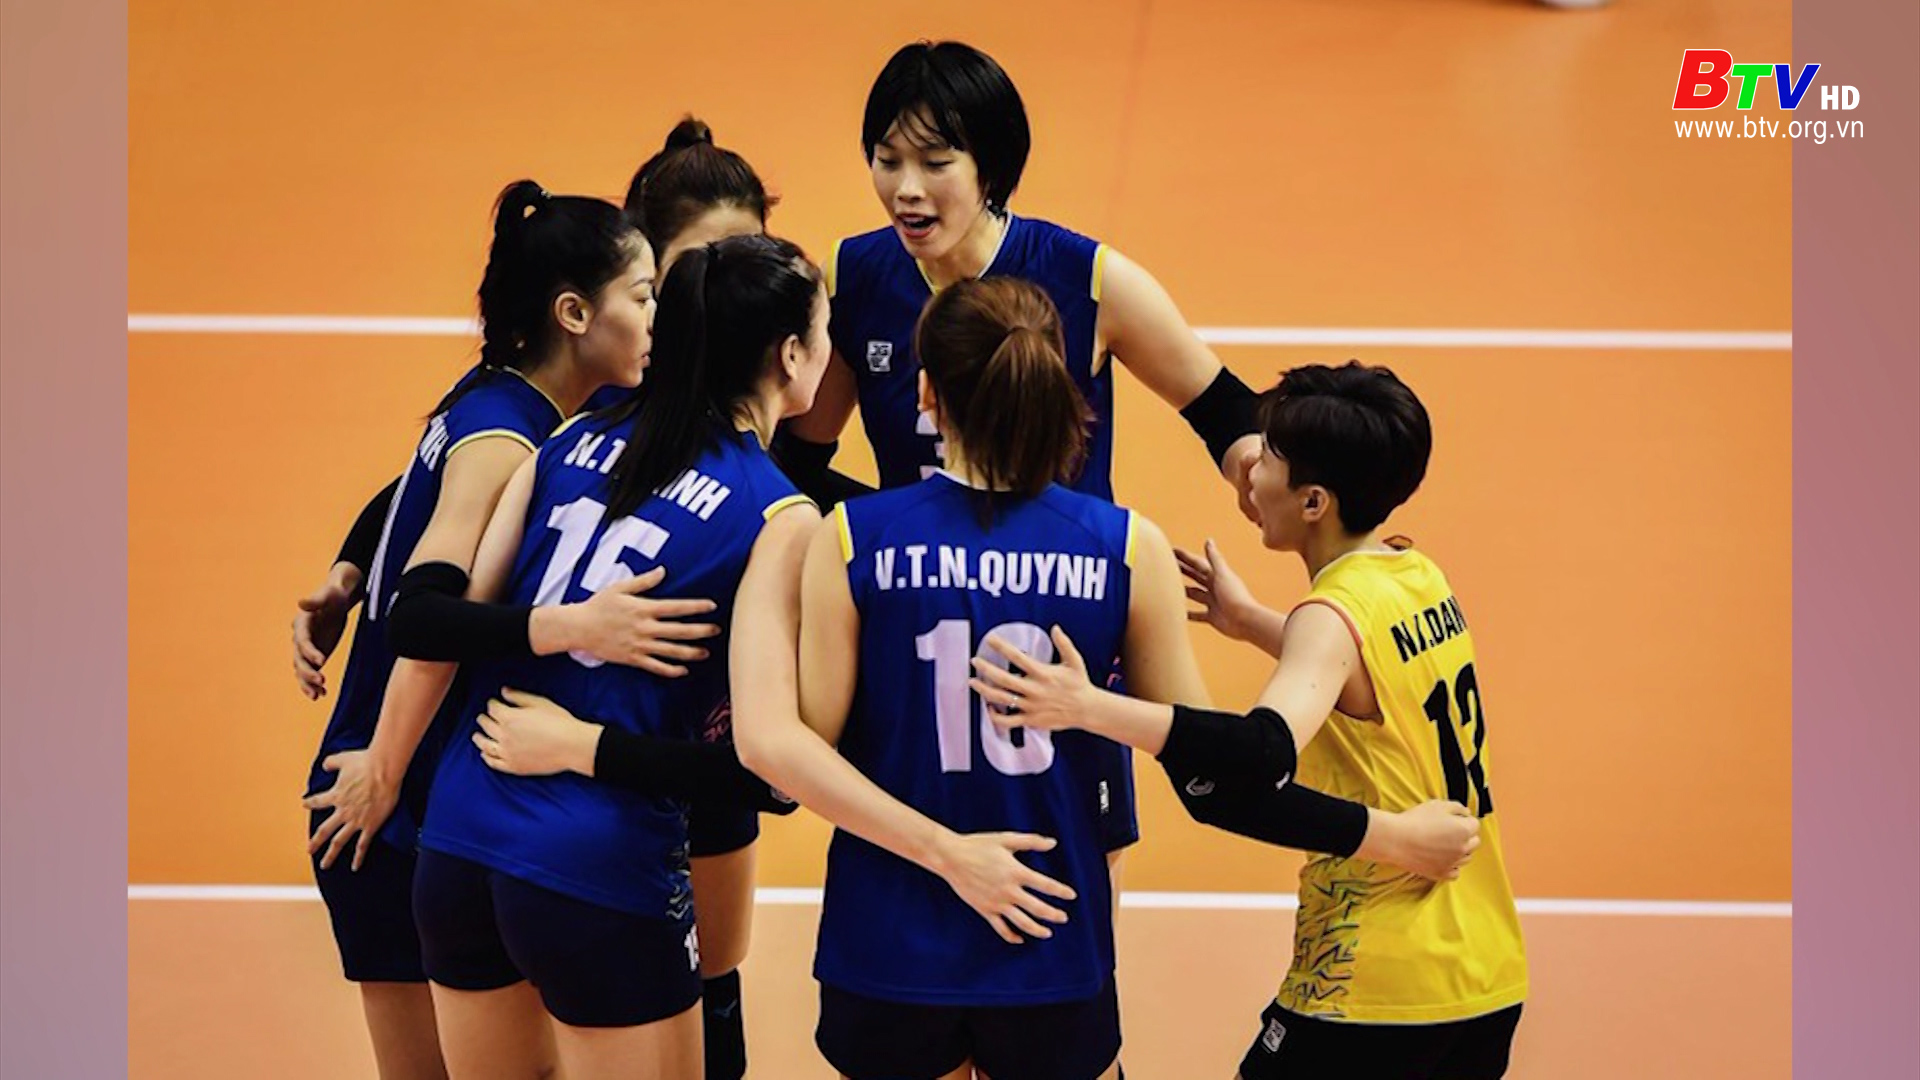 Đội tuyển bóng chuyền nữ Việt Nam xếp hạng 4 châu Á